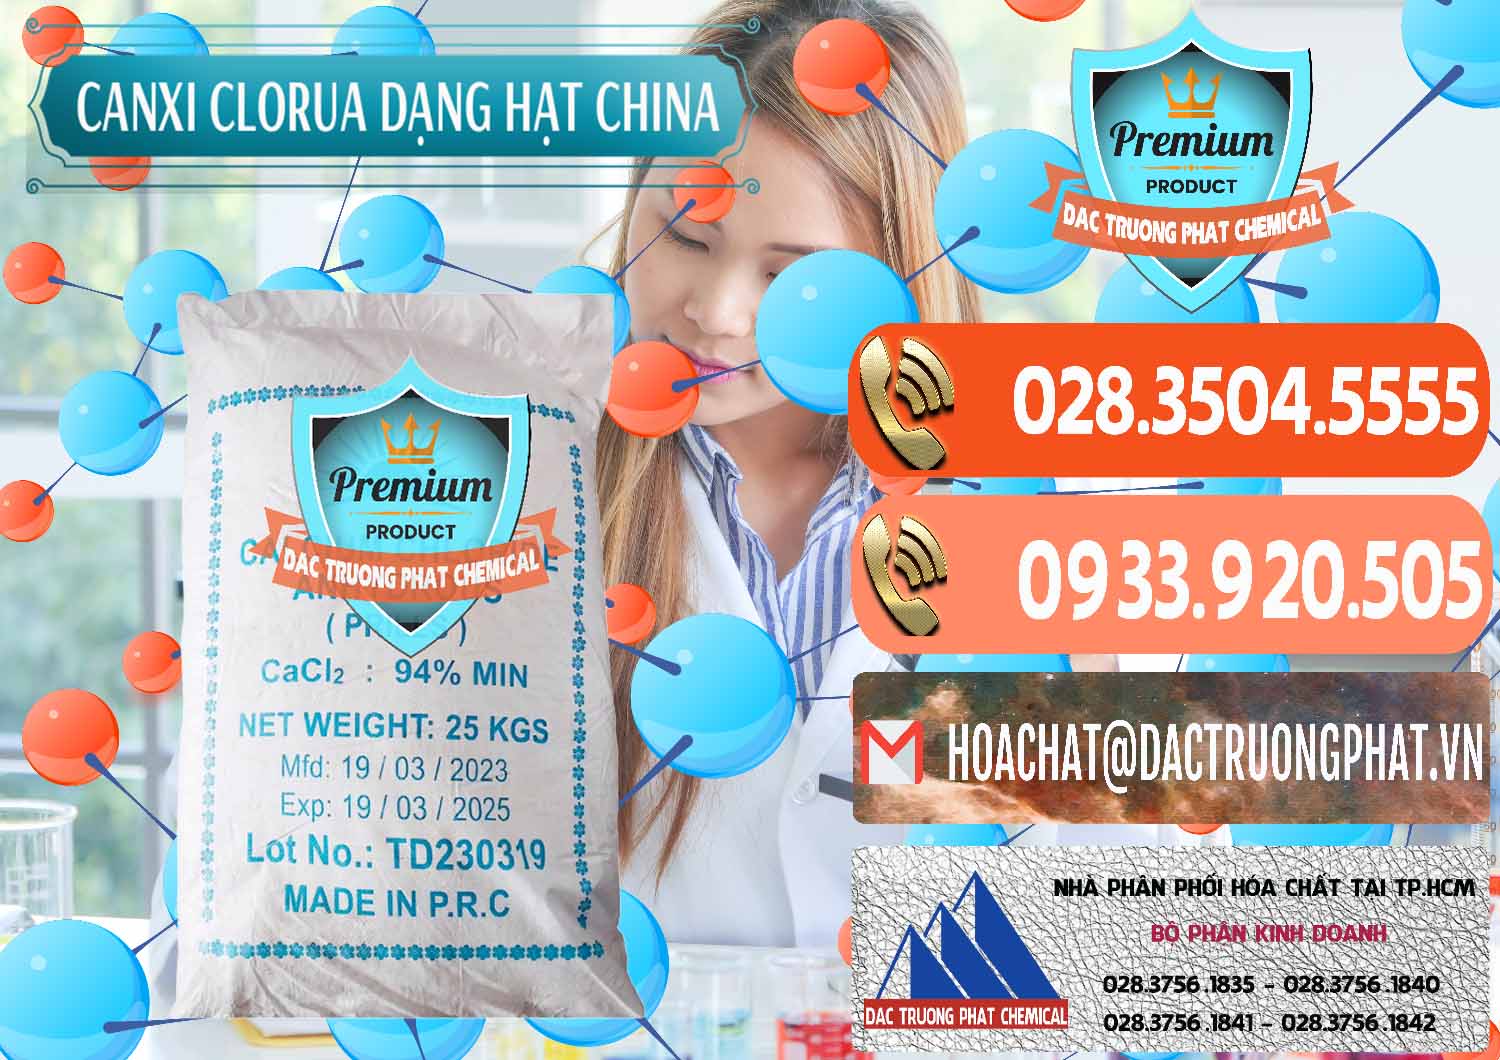 Cty chuyên cung ứng _ bán CaCl2 – Canxi Clorua 94% Dạng Hạt Trung Quốc China - 0373 - Nhập khẩu và phân phối hóa chất tại TP.HCM - hoachatmientay.com